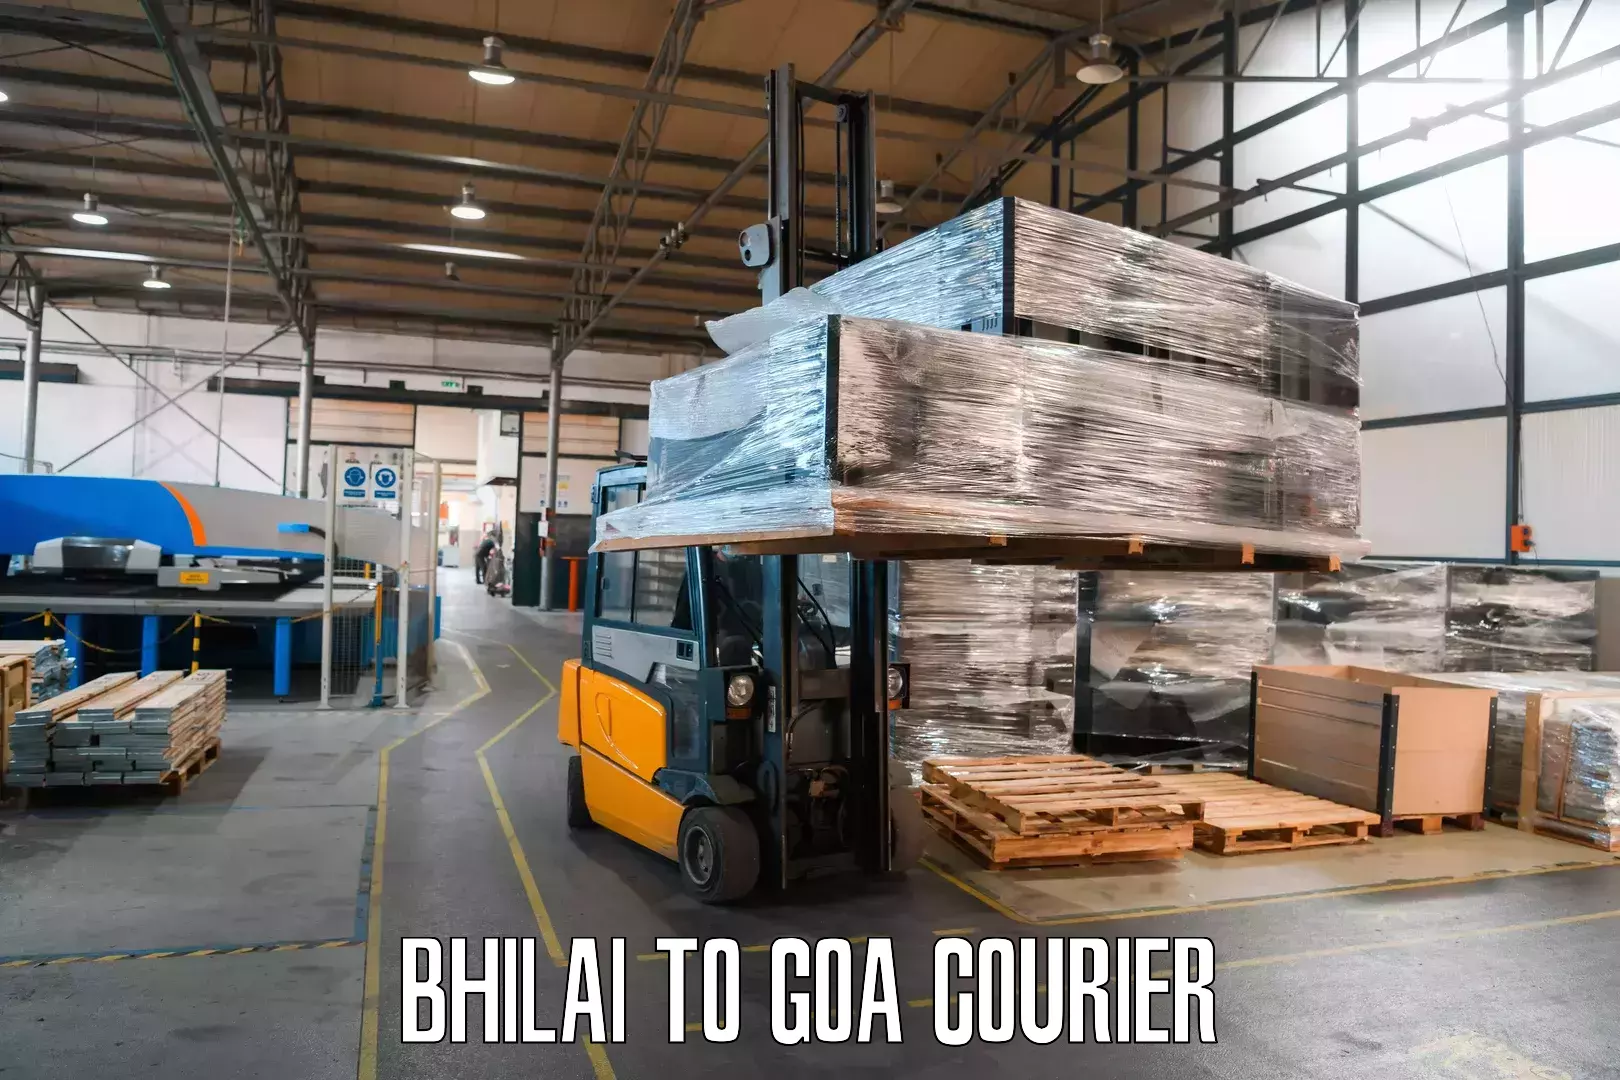 Next-day freight services Bhilai to Panaji